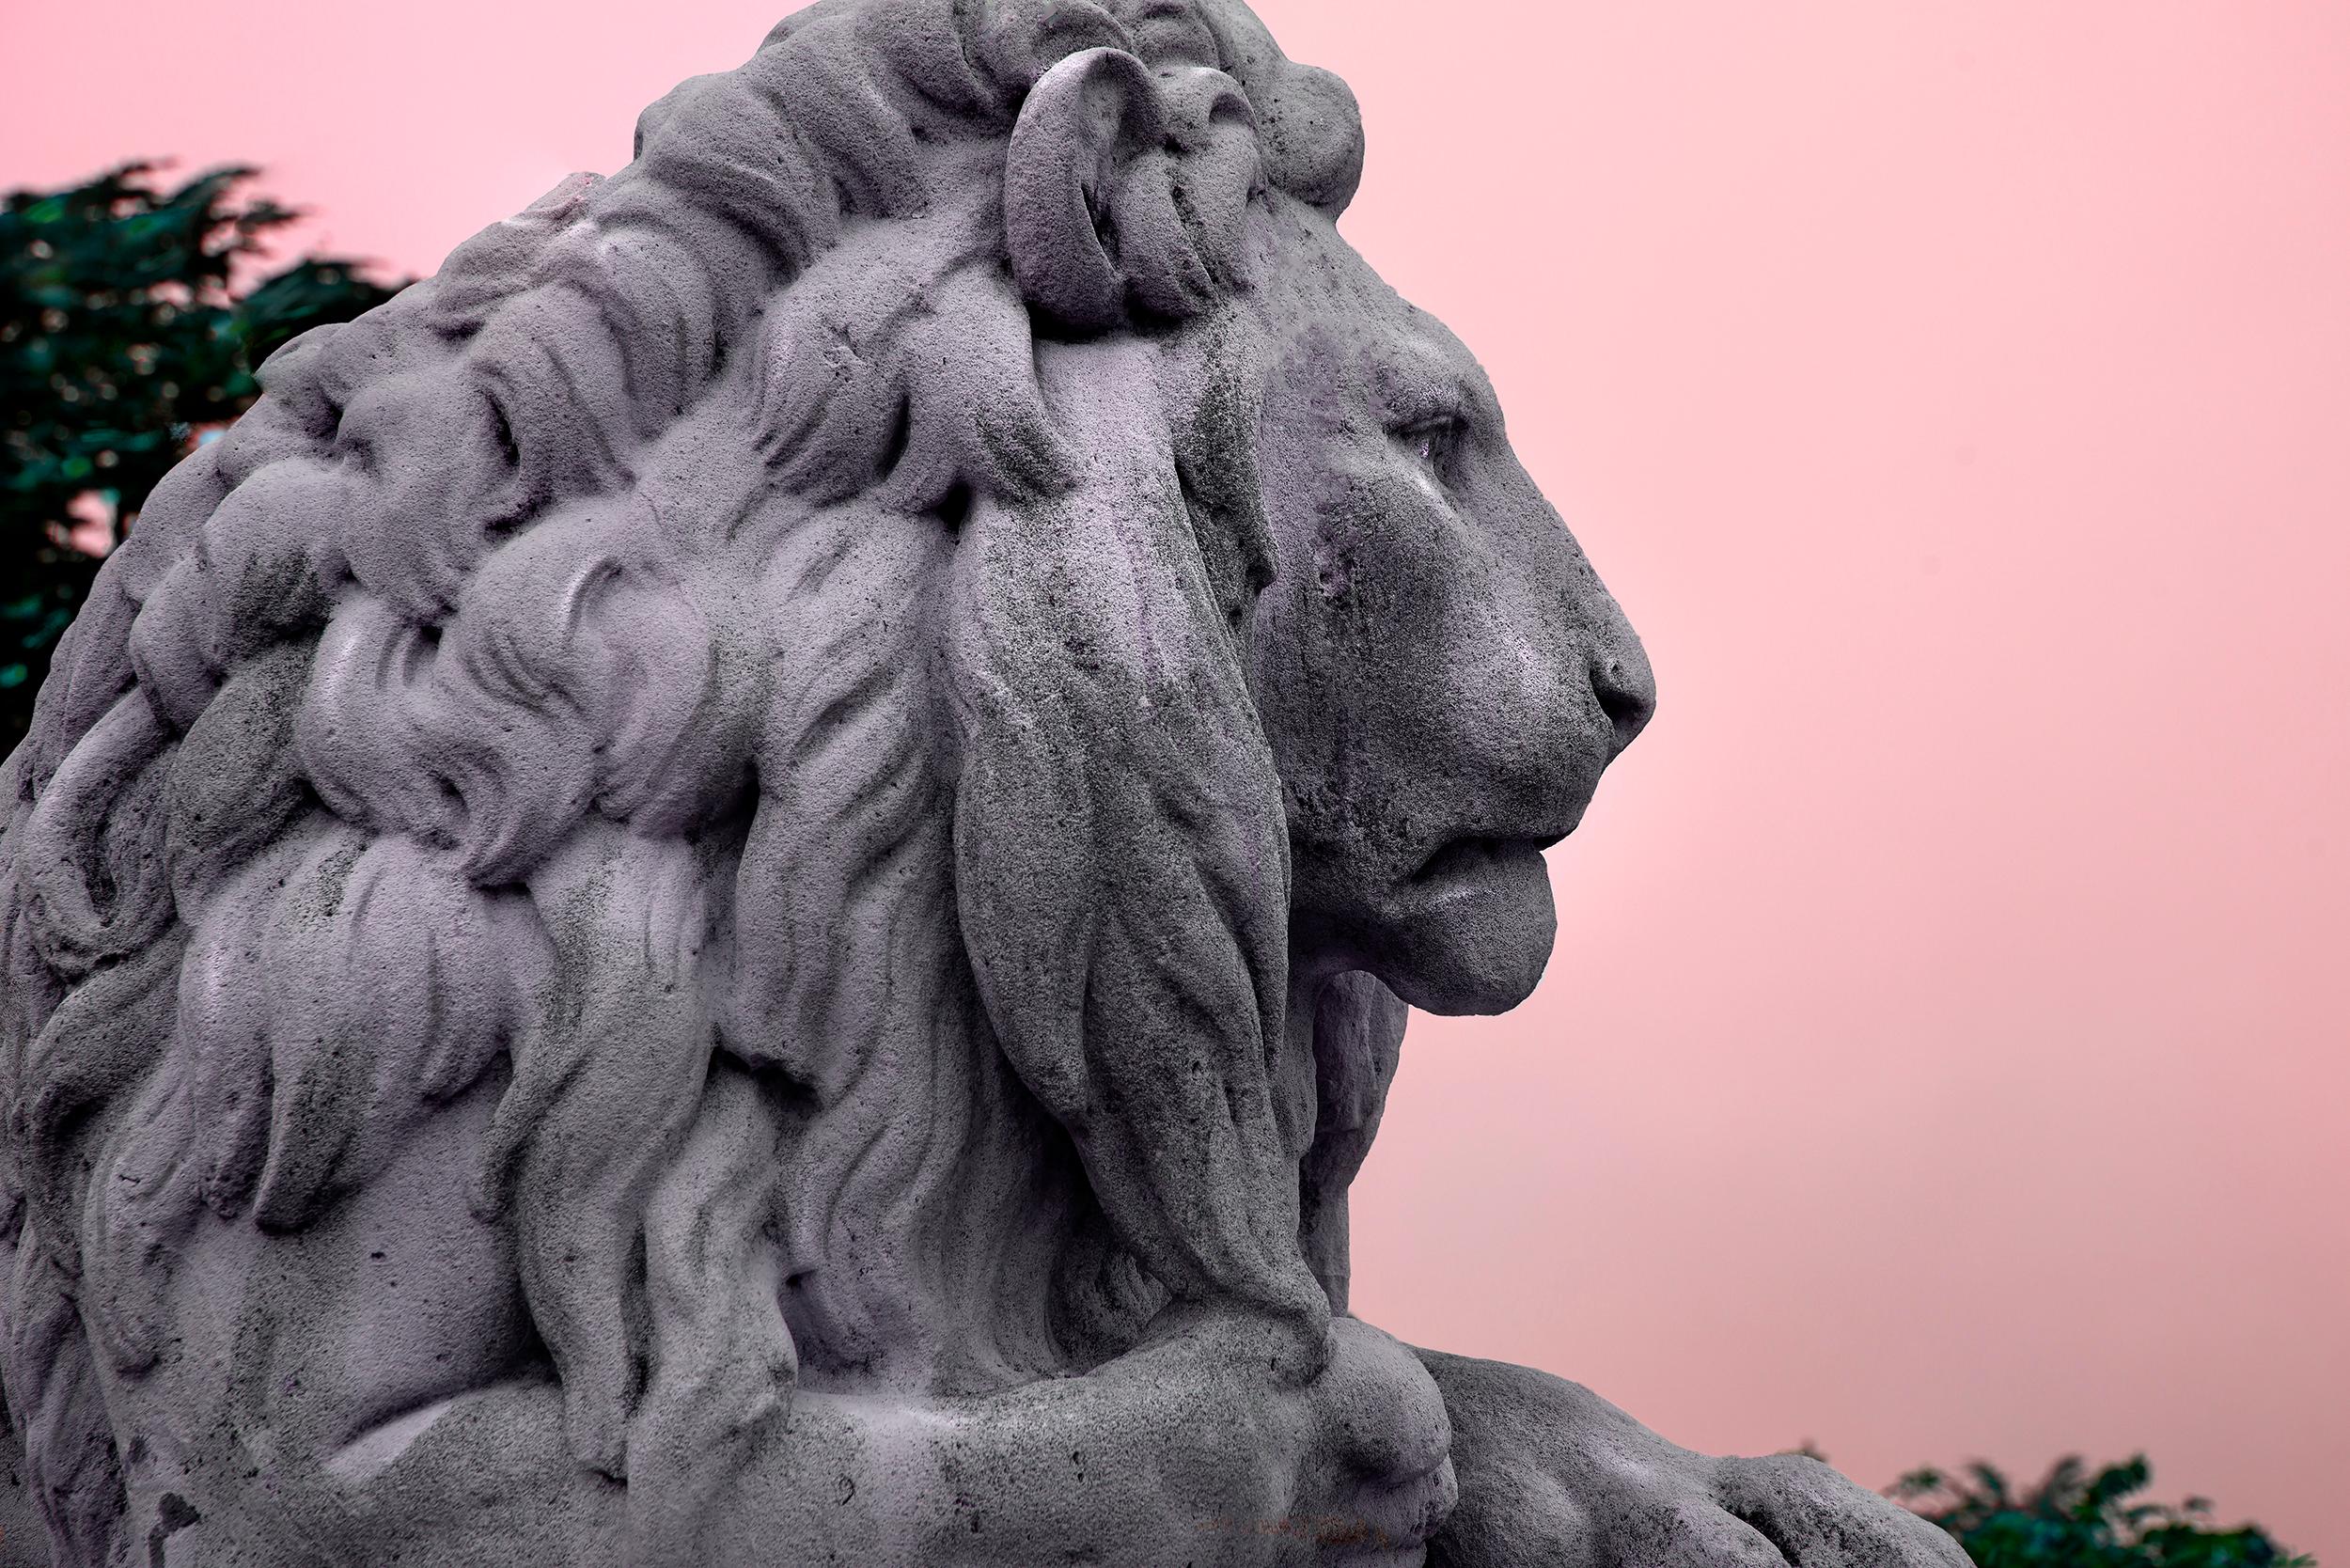 Robert Funk Portrait Photograph - Lion Male in Majestic Mauve